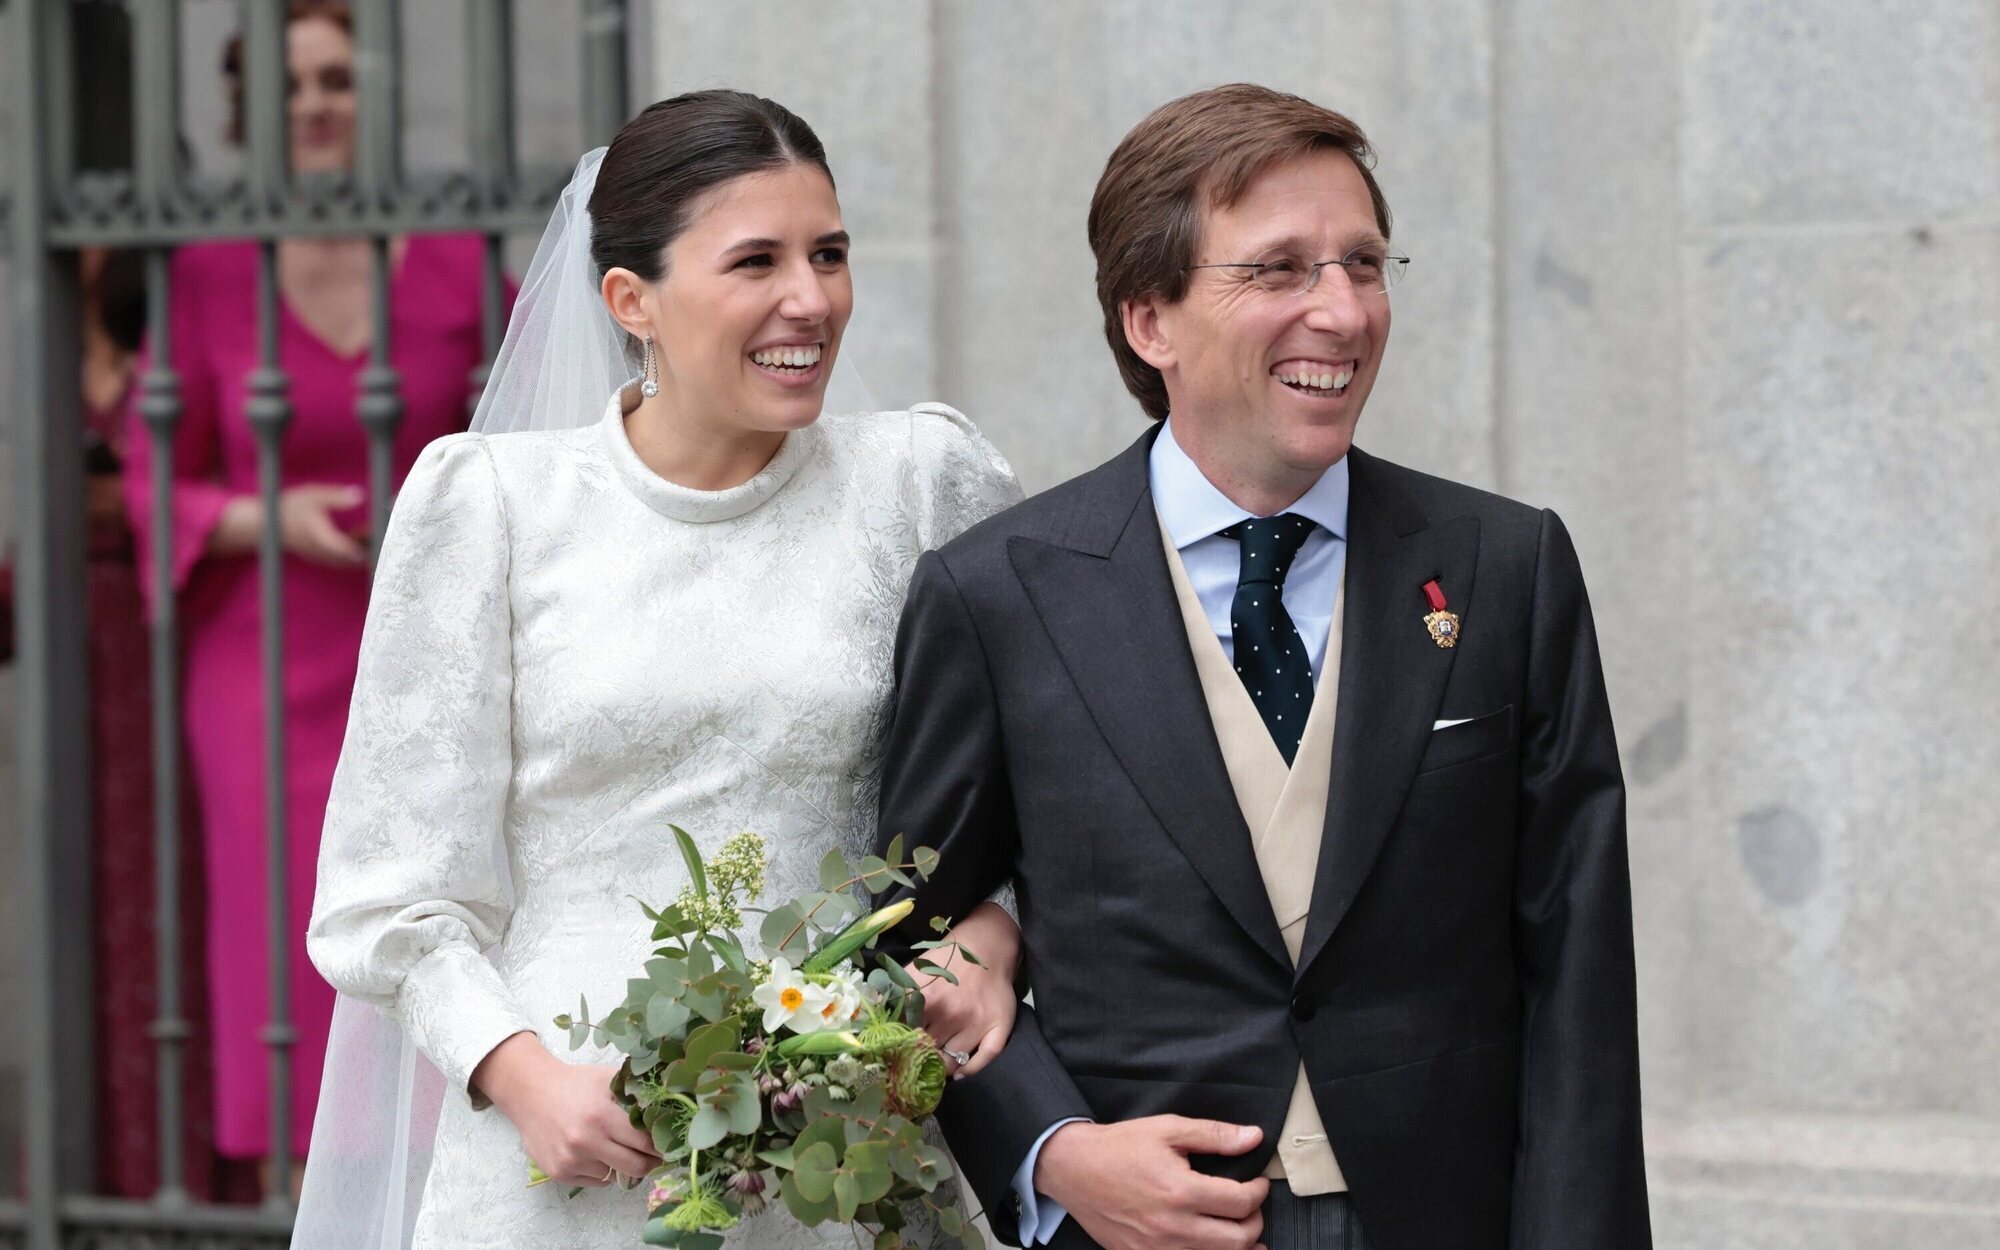 La polémica retransmisión de la boda de Almeida en Telemadrid: "Le voy a regalar este programa como recuerdo"